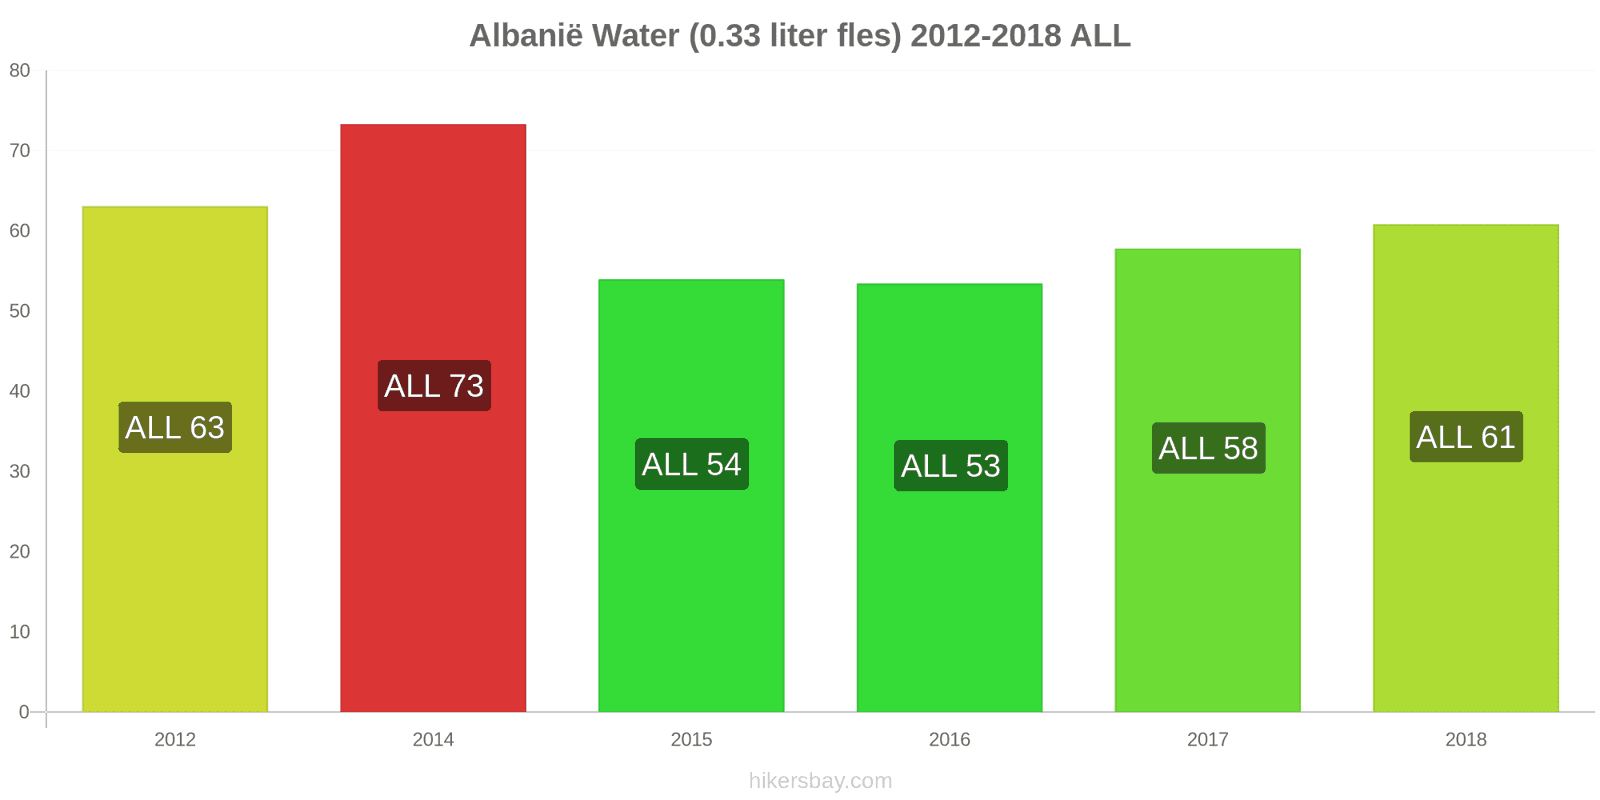 Albanië prijswijzigingen Water (0.33 liter fles) hikersbay.com